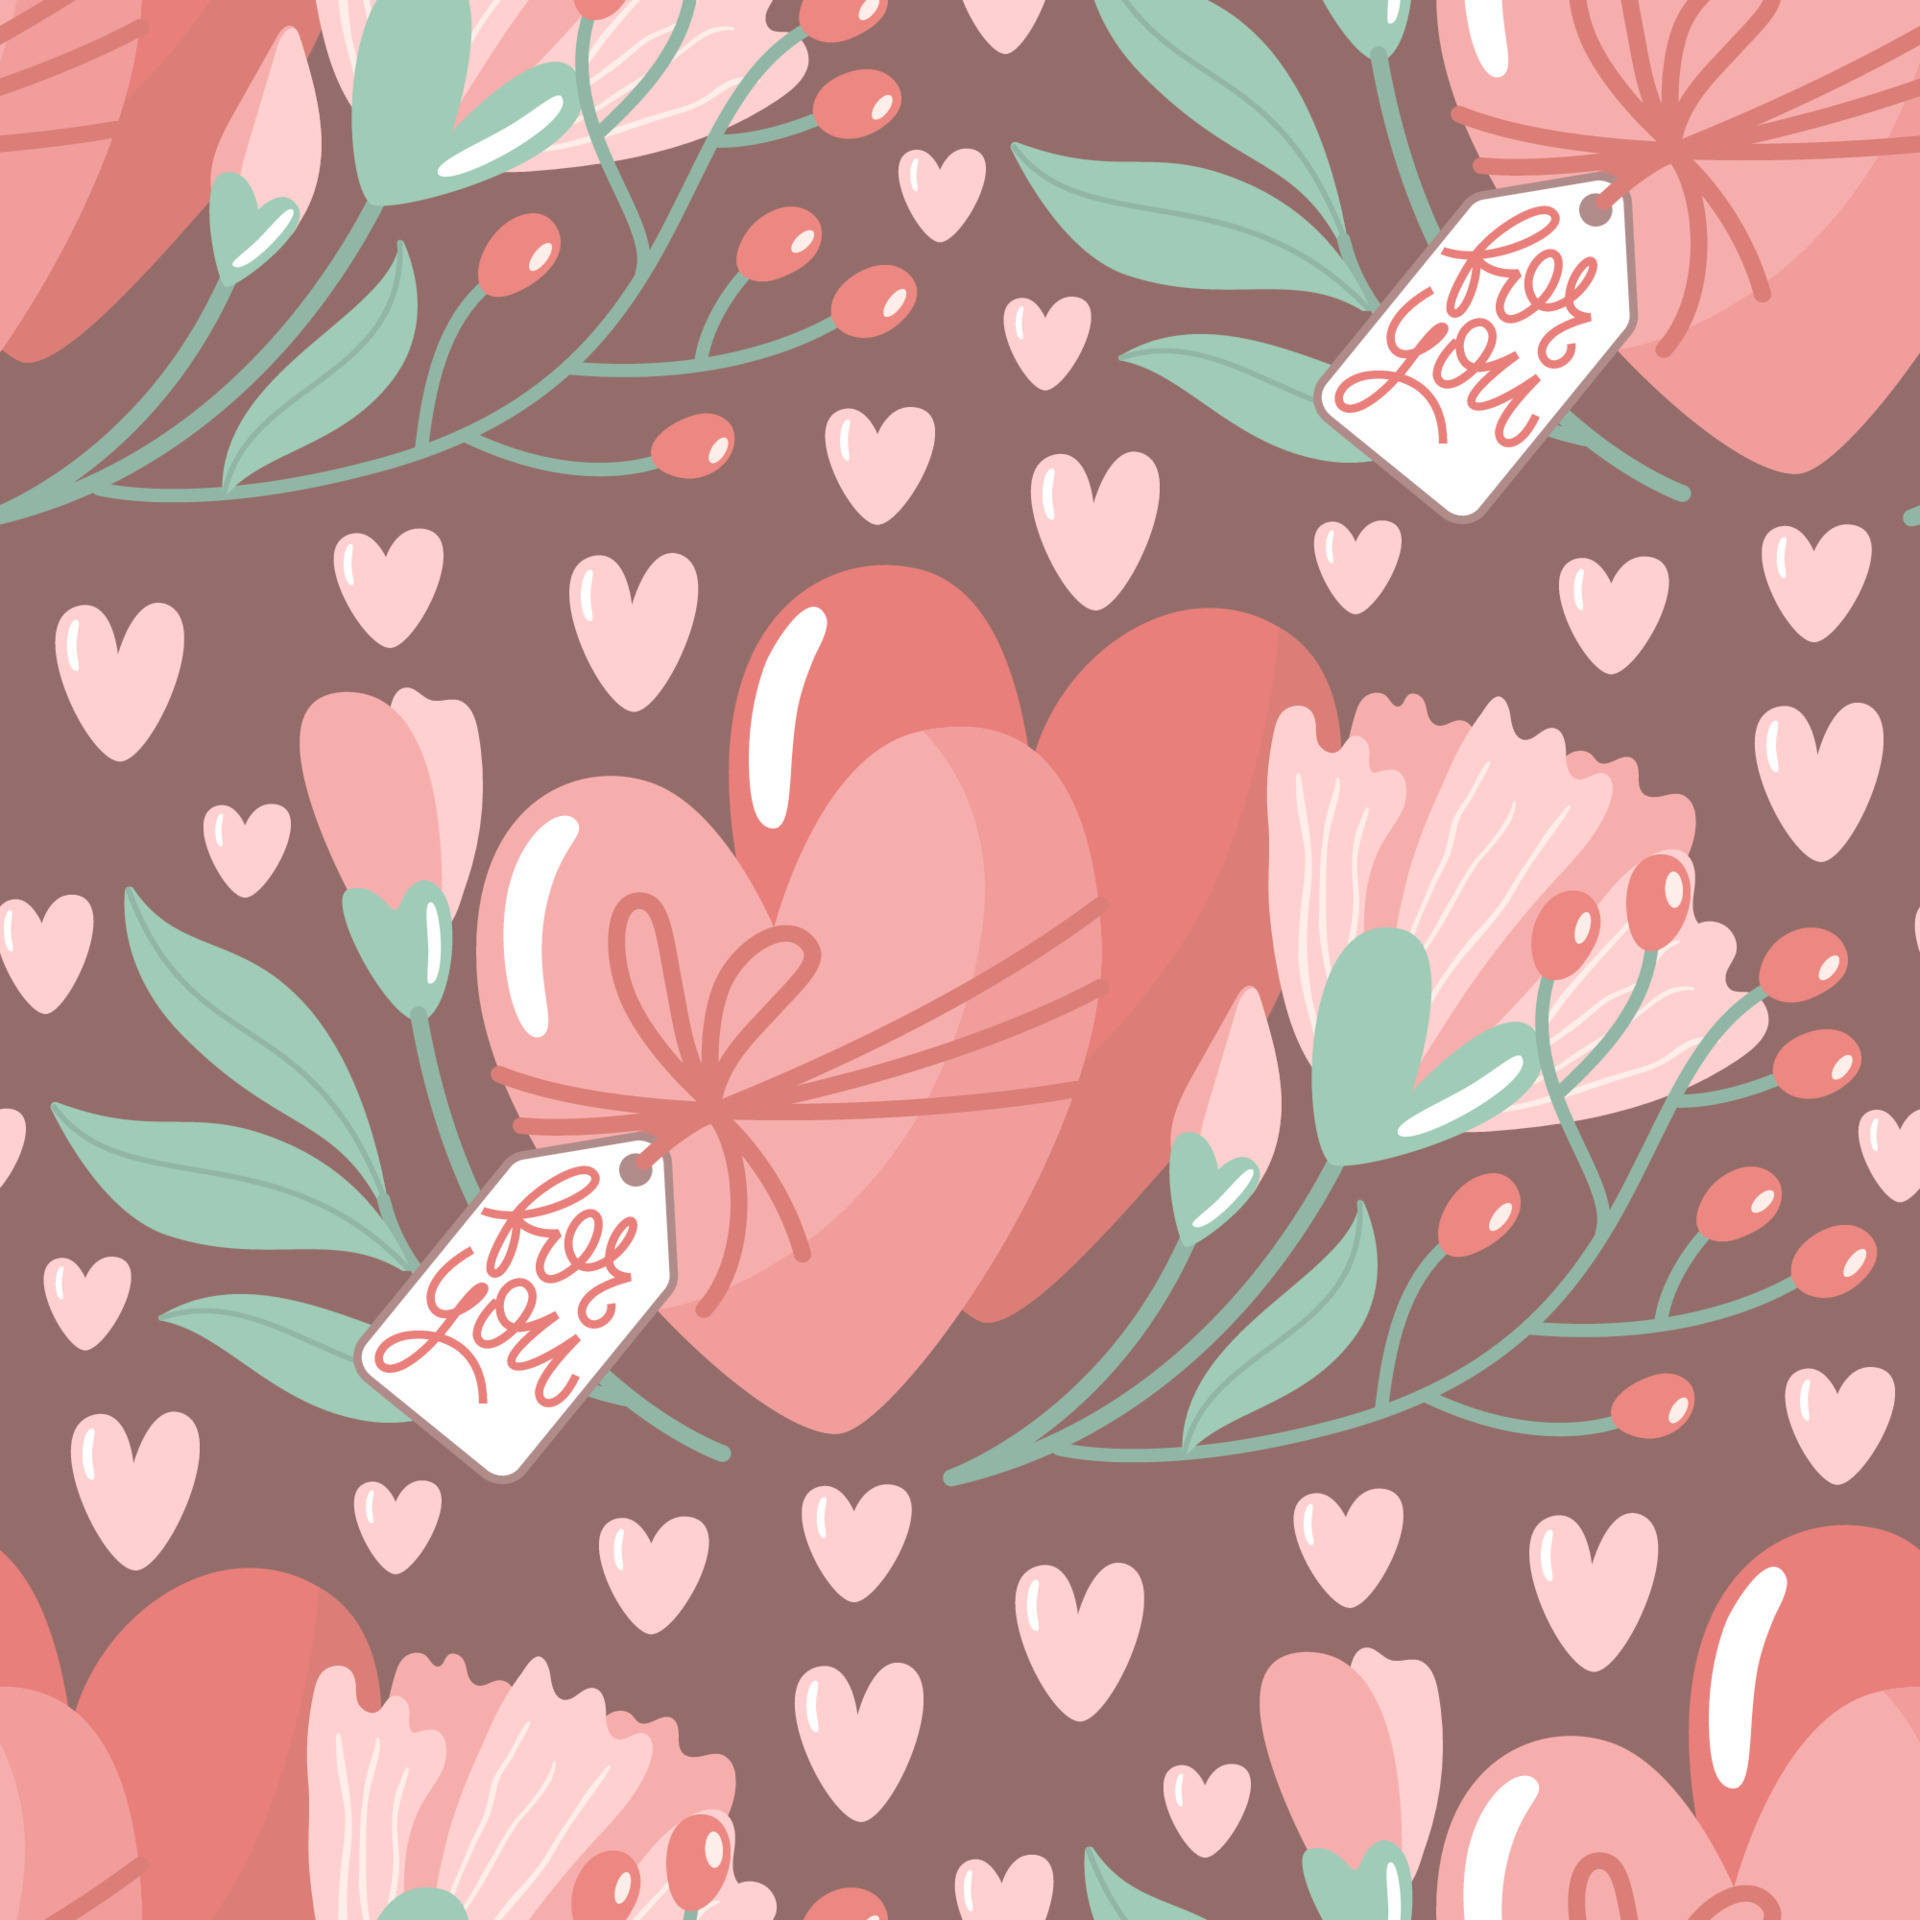 Machensie Ihren Valentinstag Mit Diesen Süßen Ideen Besonders Wallpaper